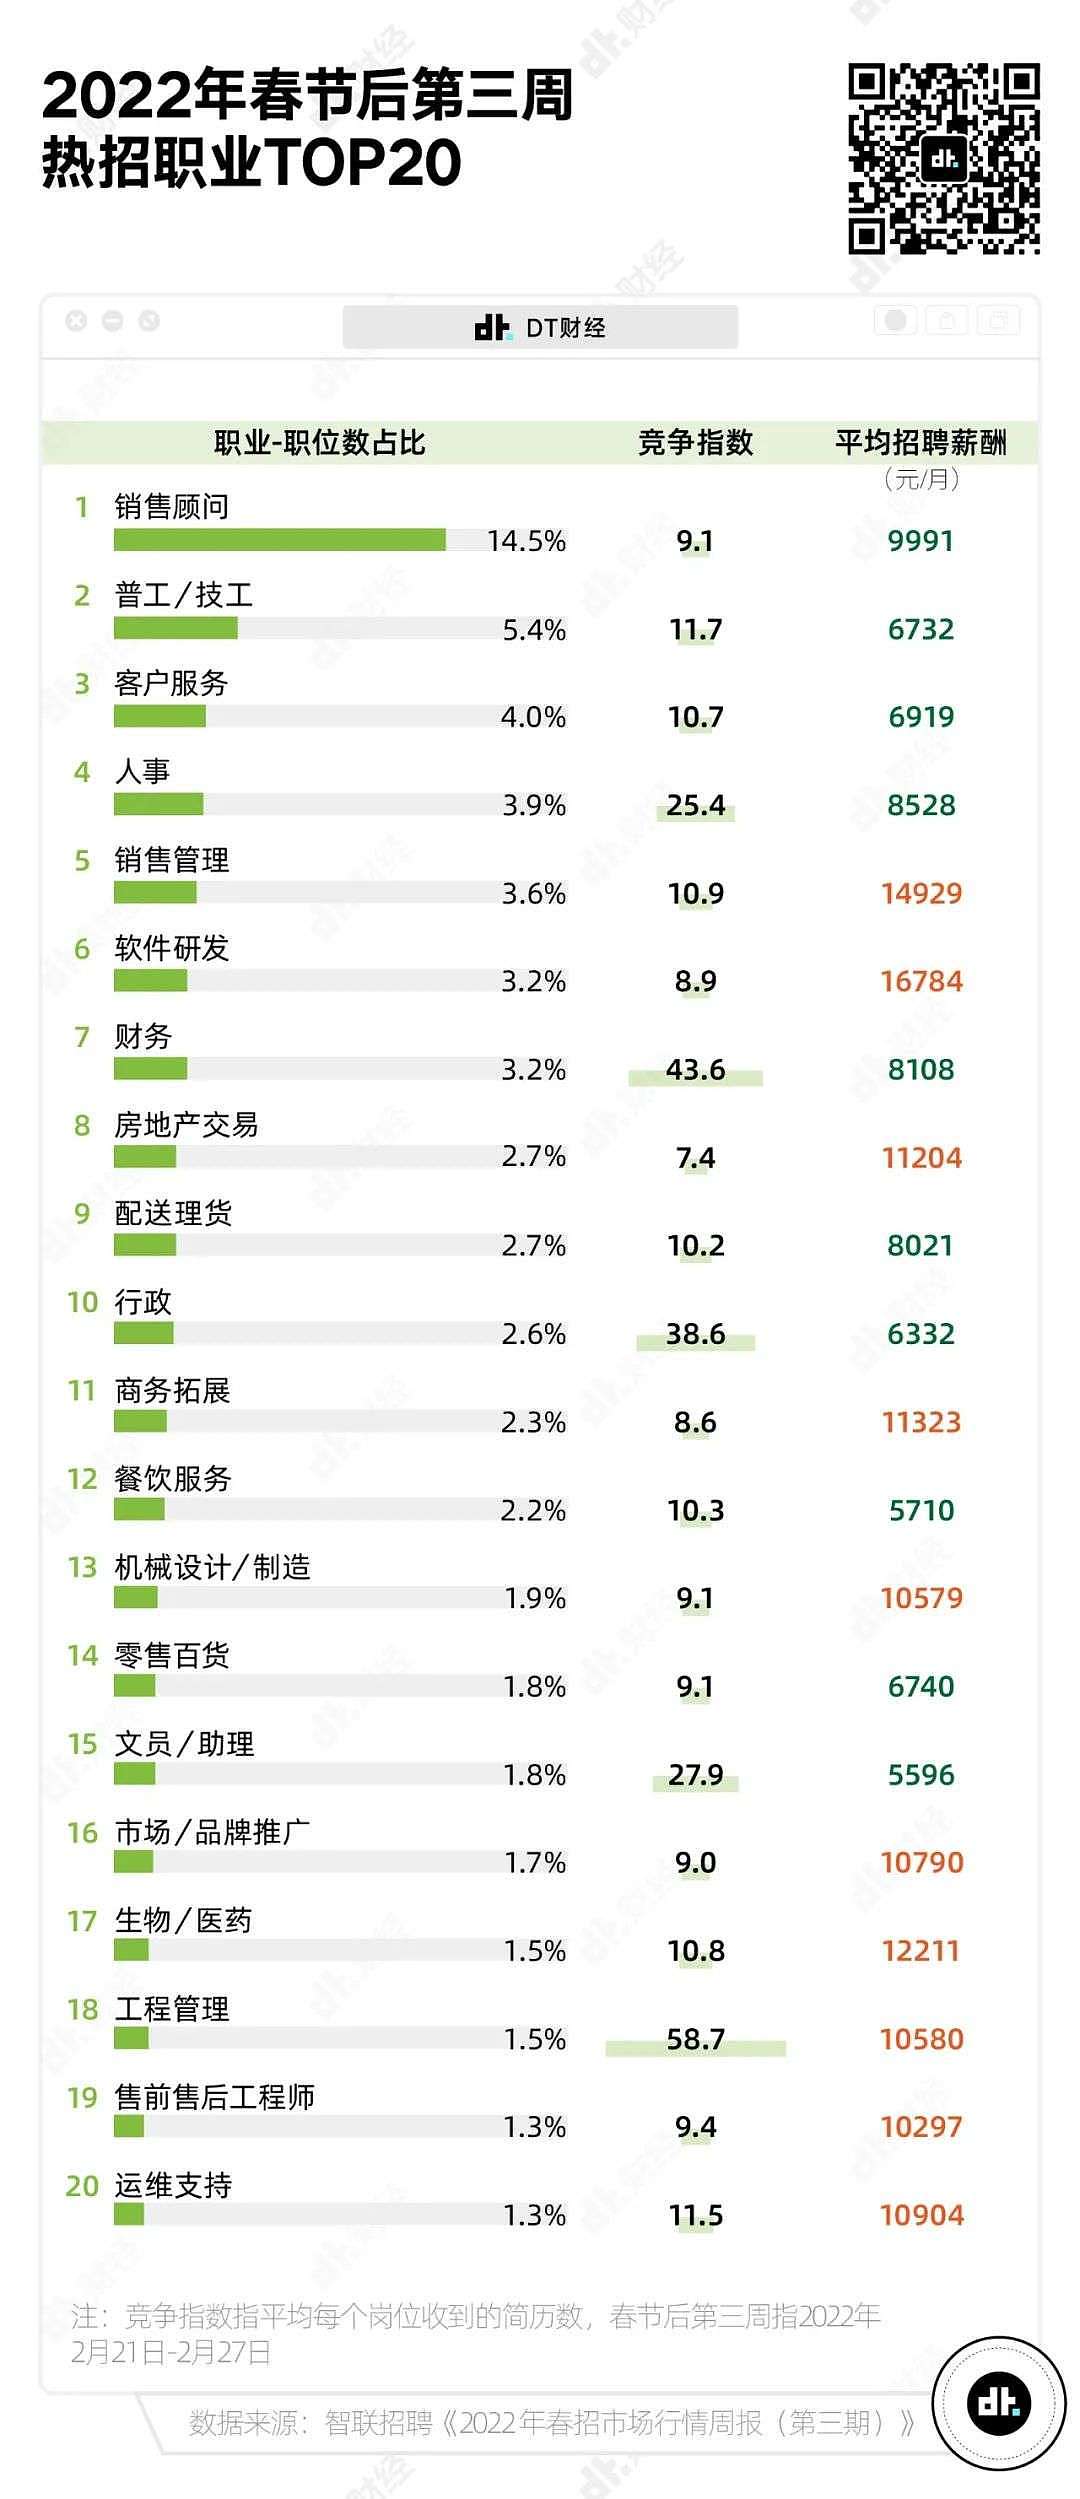 春招平均薪酬最高的职业TOP10 - 3